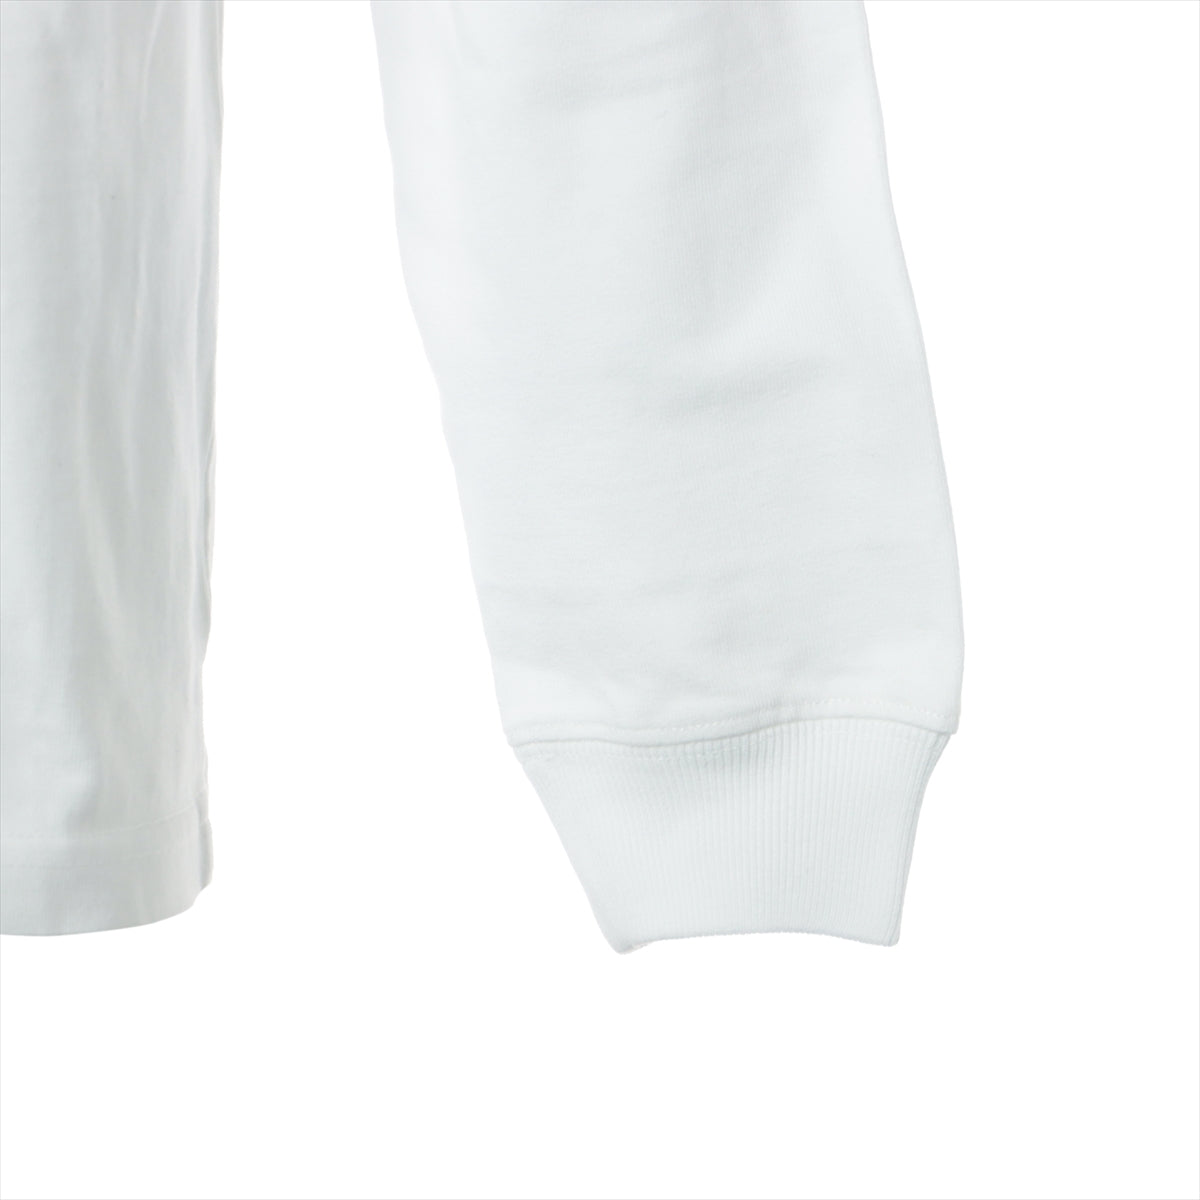 Dior x Travis Scott 22AW Cotton Long T shirts S Men's White  283J647A0554